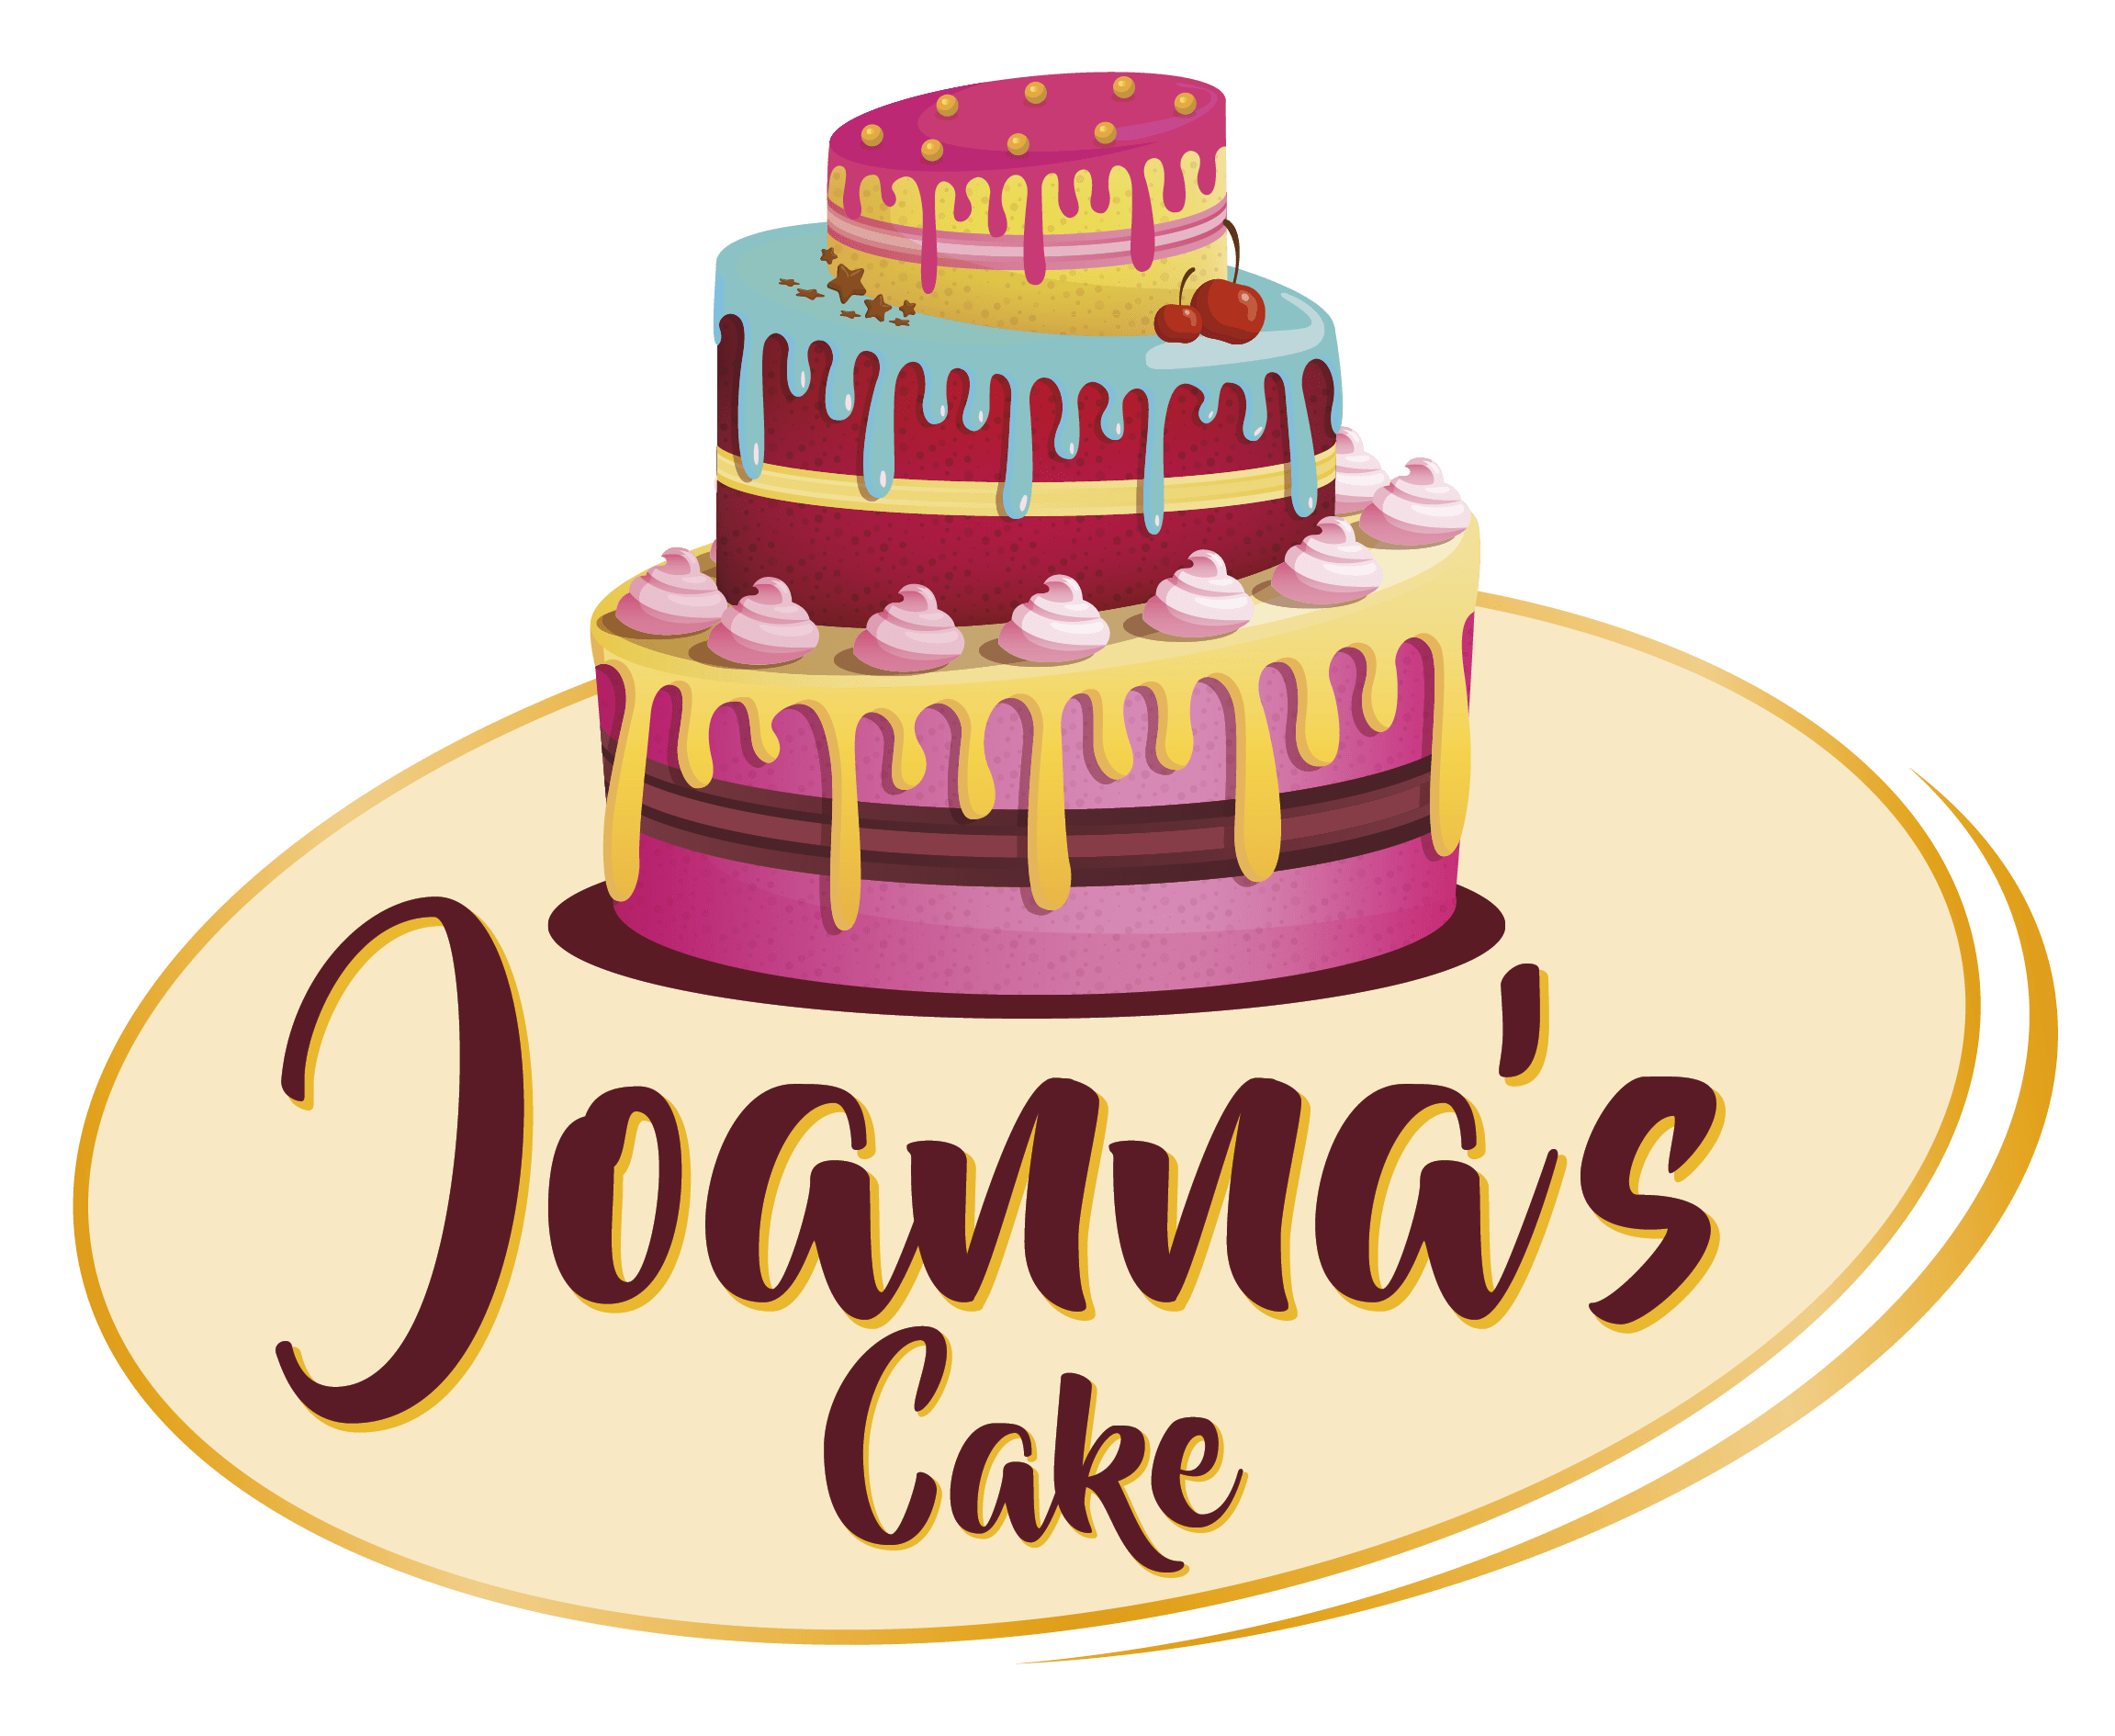 Joanna's Cake